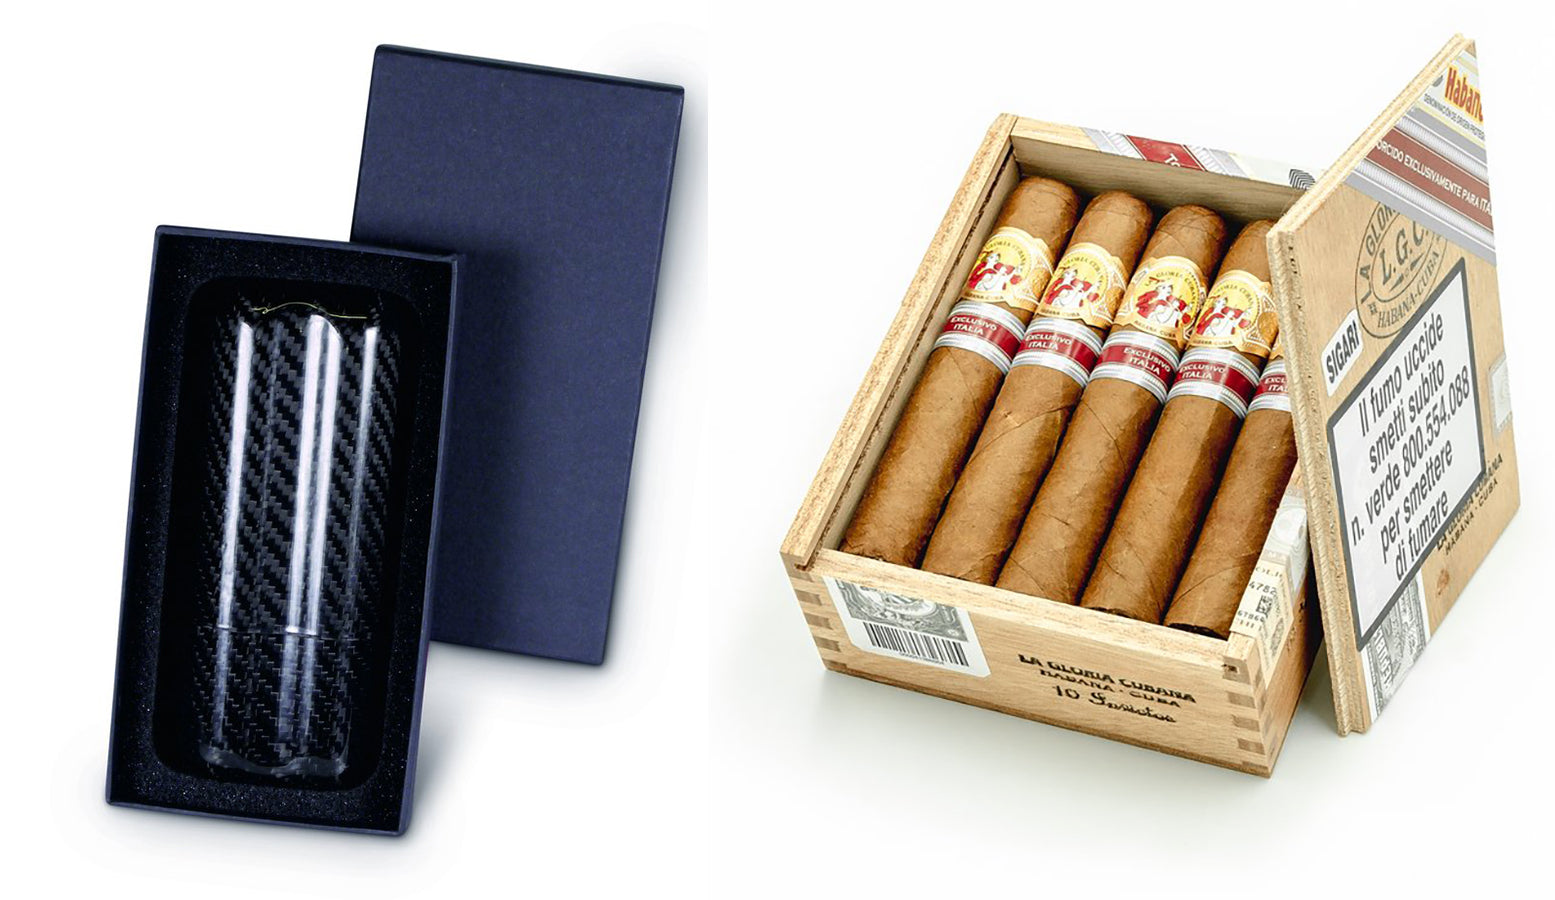 Zigarrenetui aus Kohlefaser La gloria cubana invictos cigar ex. italia 2018 EGm Zigarren